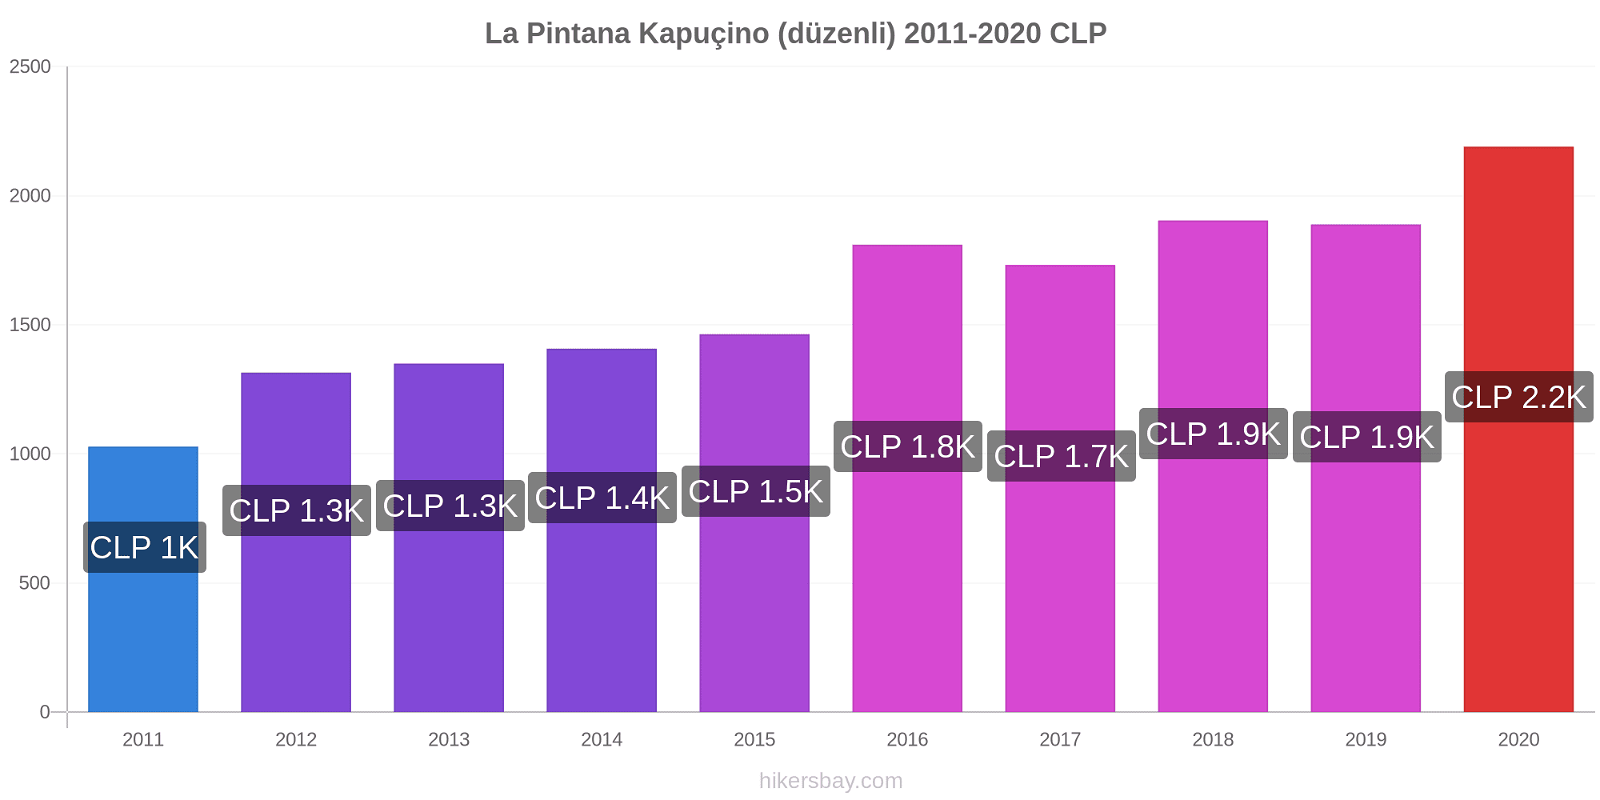 La Pintana fiyat değişiklikleri Kapuçino (düzenli) hikersbay.com